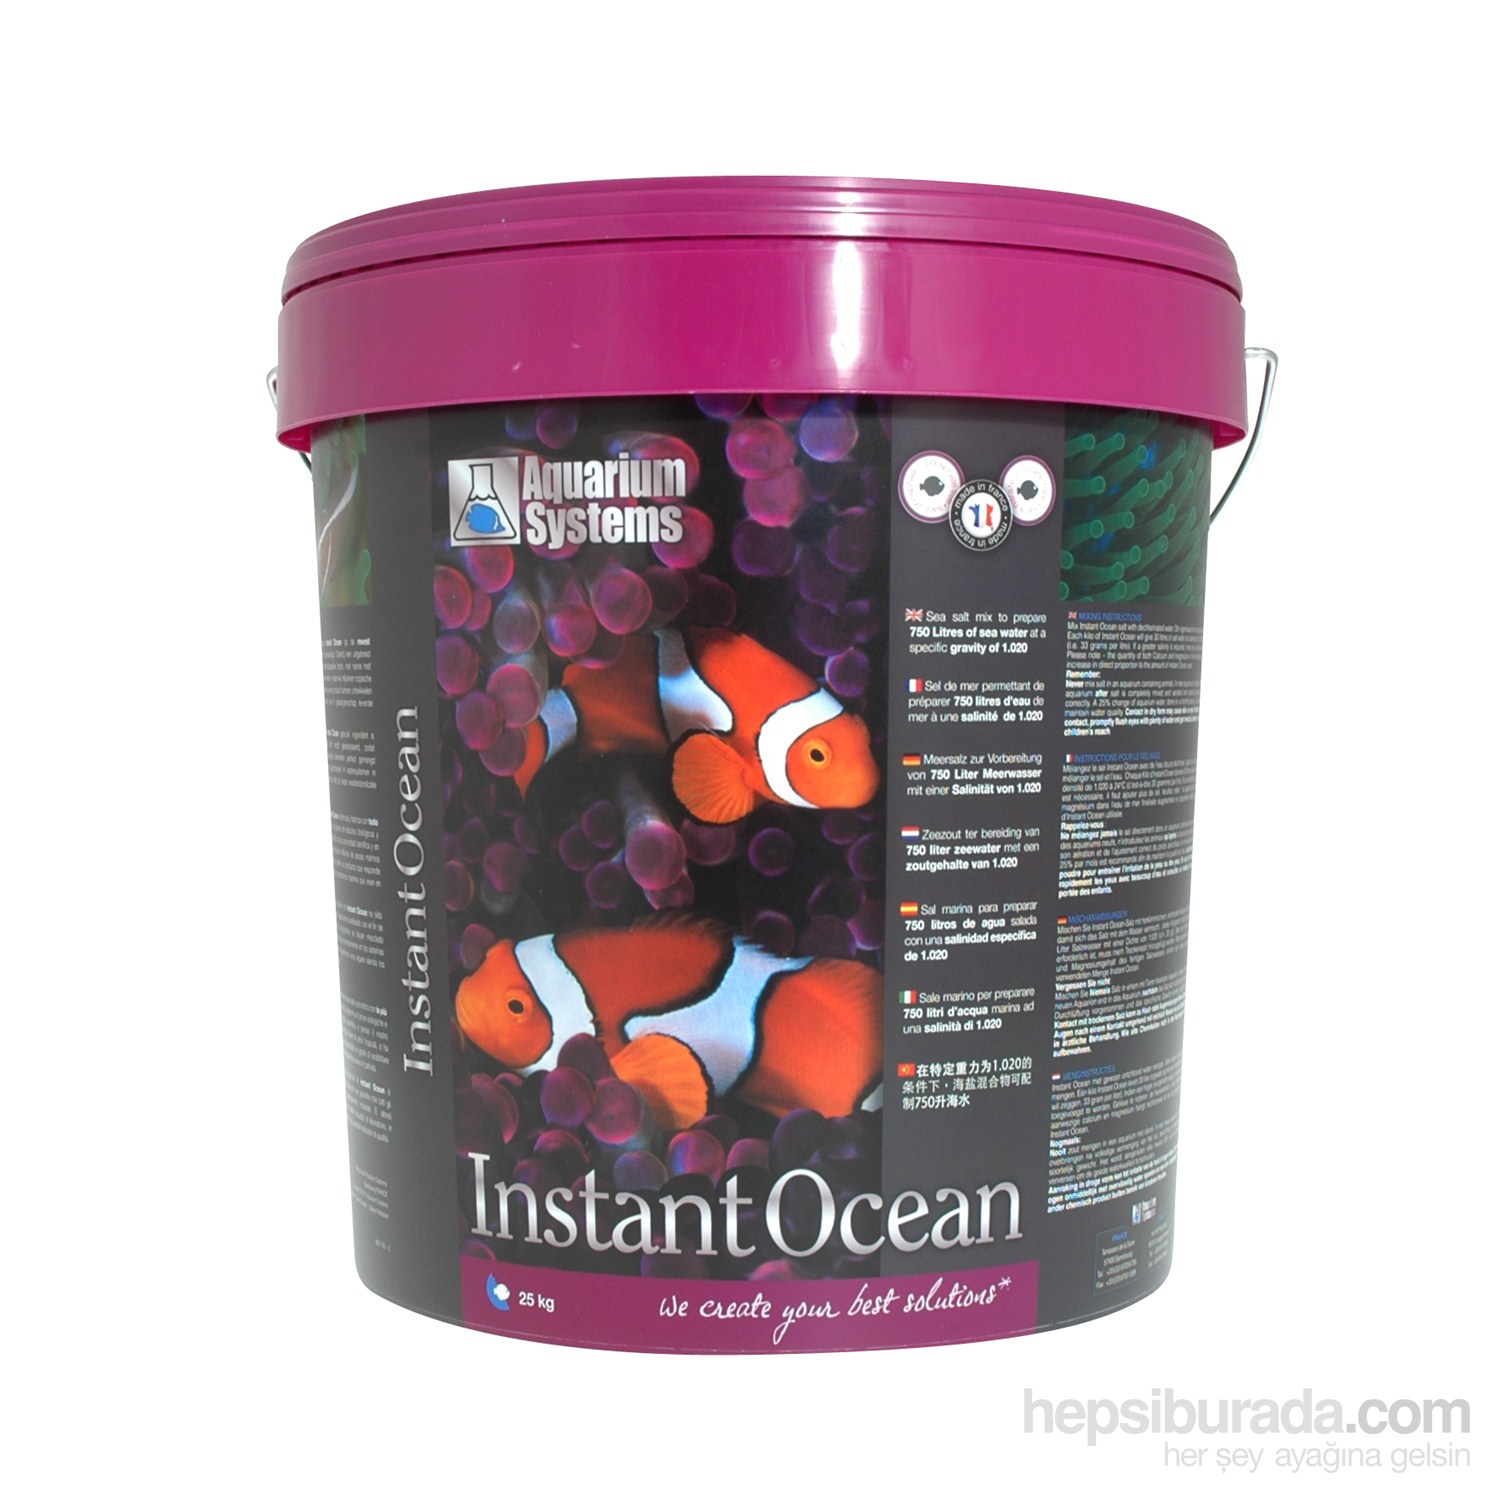 Aquarium Systems Instant Ocean 25 Kg Kova Sentetik Deniz Tuzu